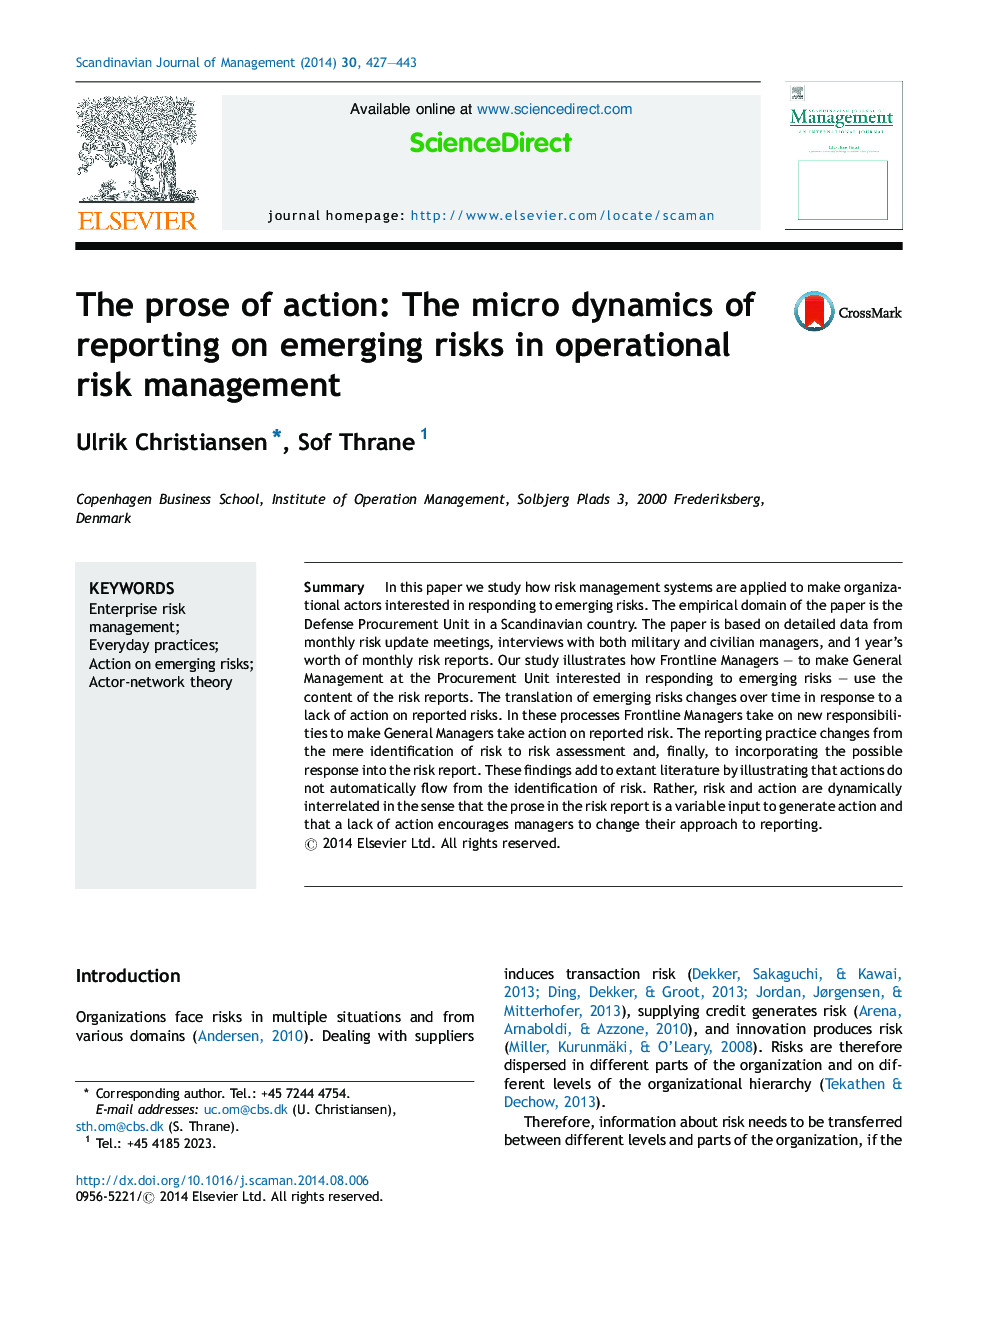 نثر عمل: دینامیک ریز گزارشگری در مورد خطرات در حال ظهور در مدیریت ریسک عملیاتی 